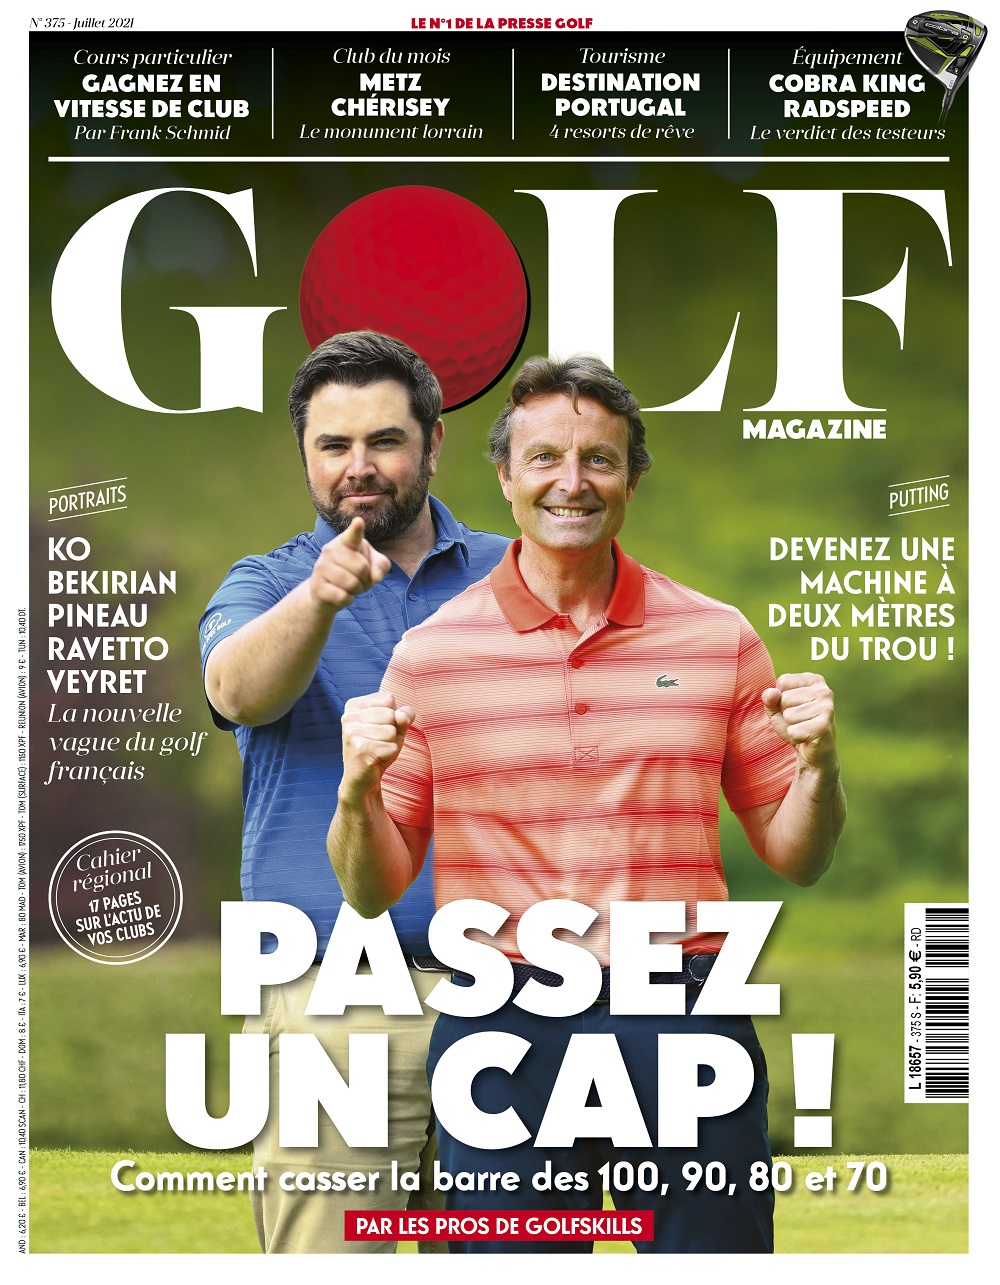 Le Golf Magazine n°375 est en kiosque !